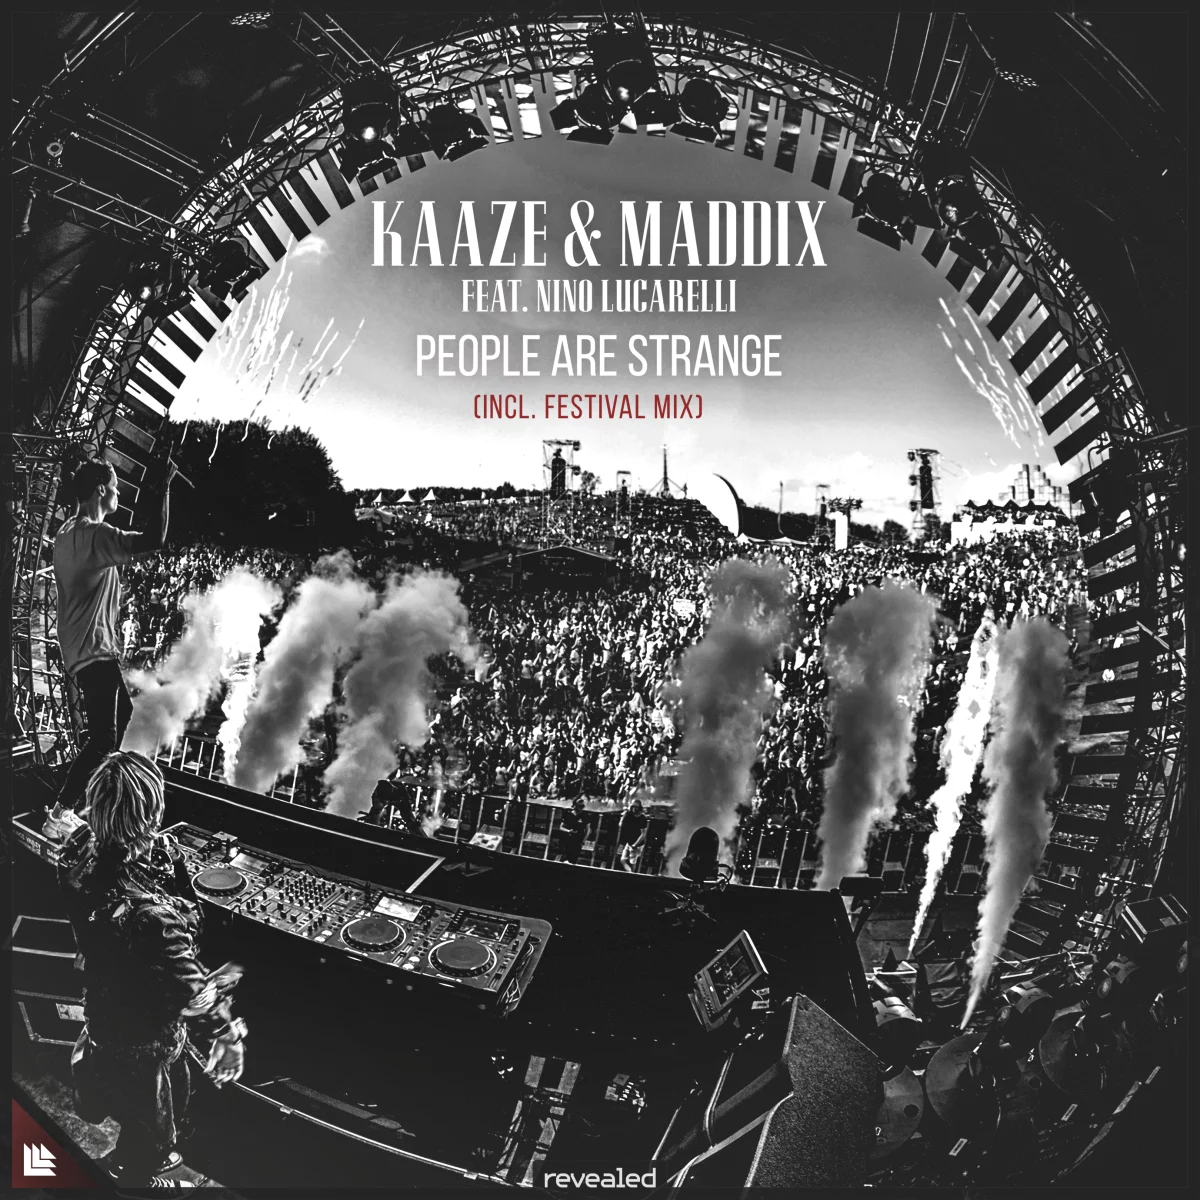 People Are Strange (Incl. Festival Mix) - KAAZE⁠ Maddix⁠ feat. Nino Lucarelli⁠ 